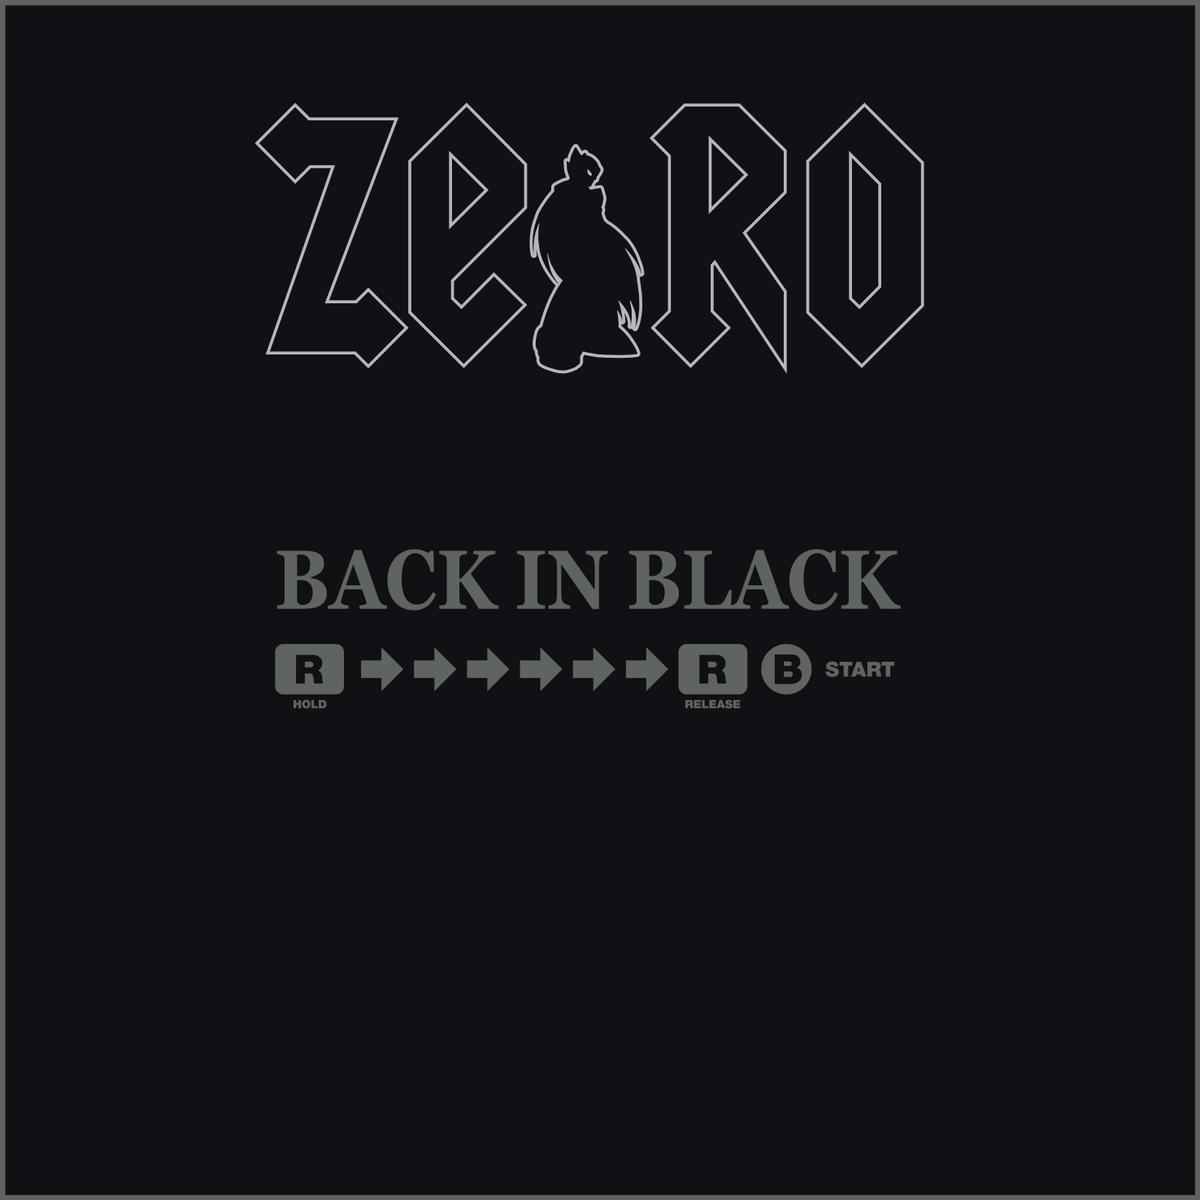 Zero is back in black 🤘 (AC/DC parody ) #MEGAMAN #ロックマン